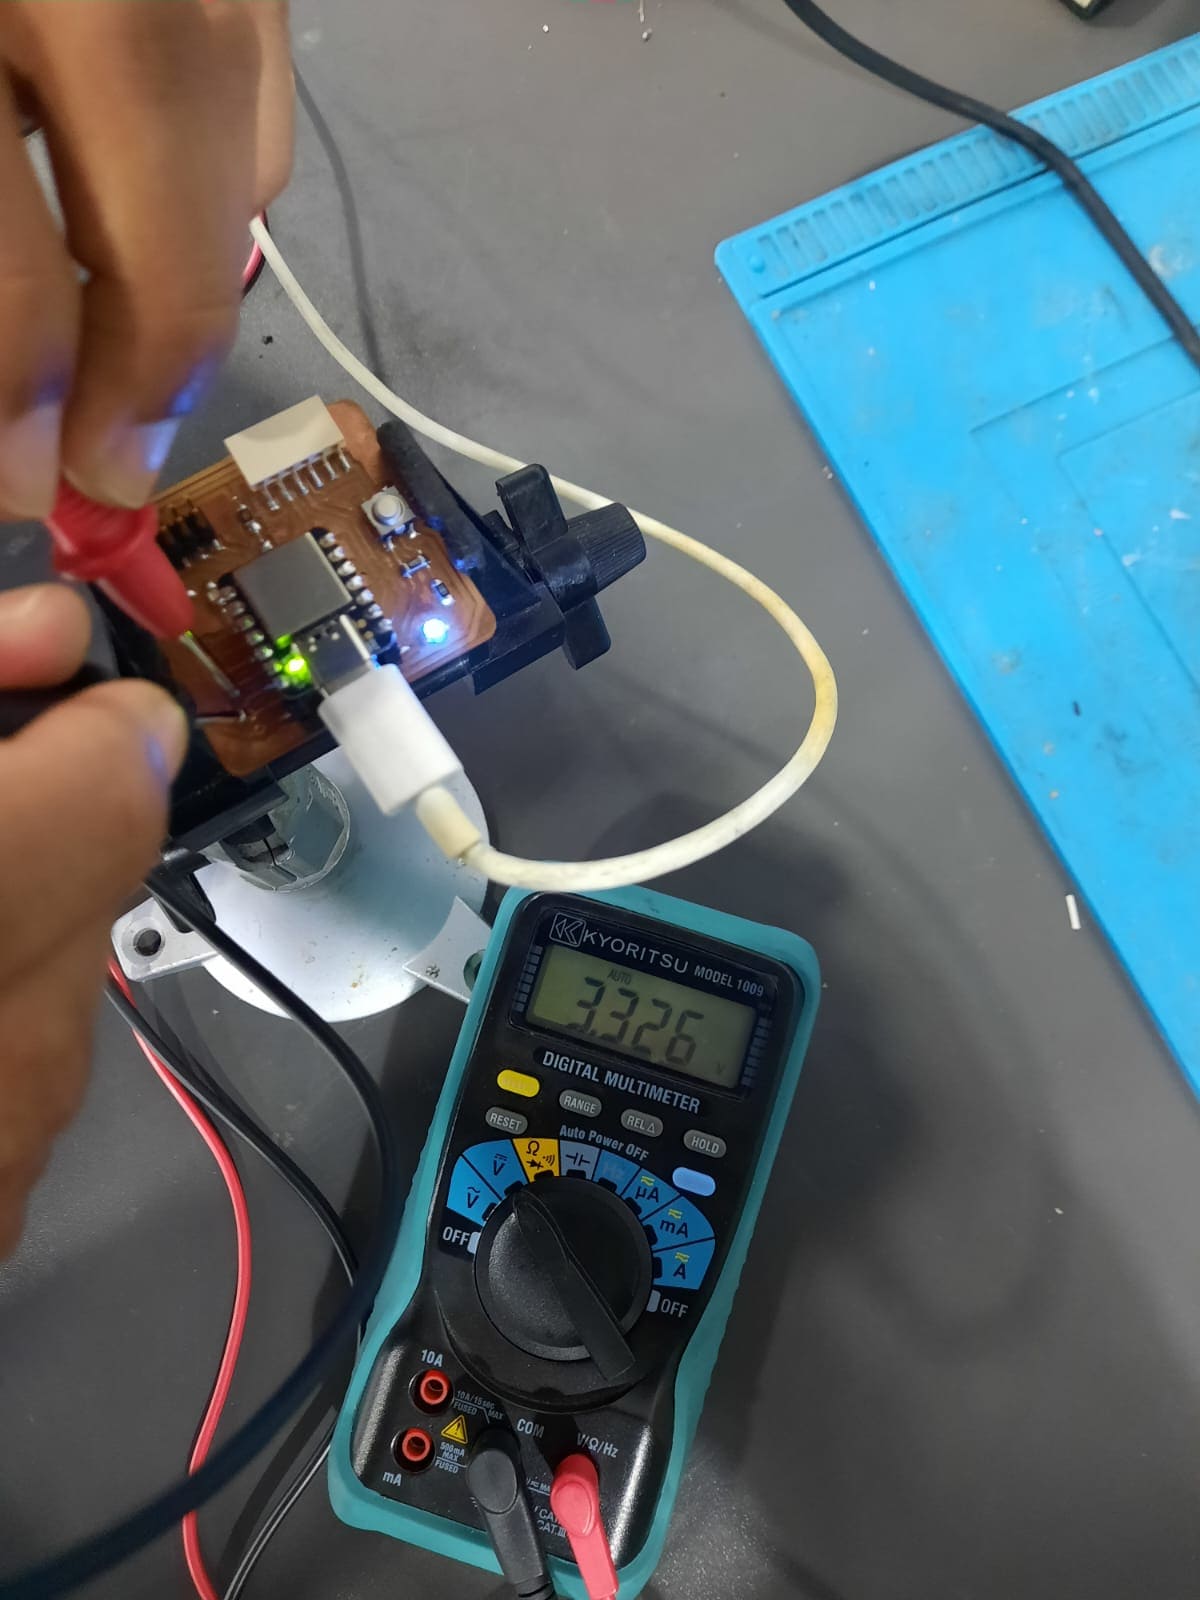 Voltage at the 3.3V pin